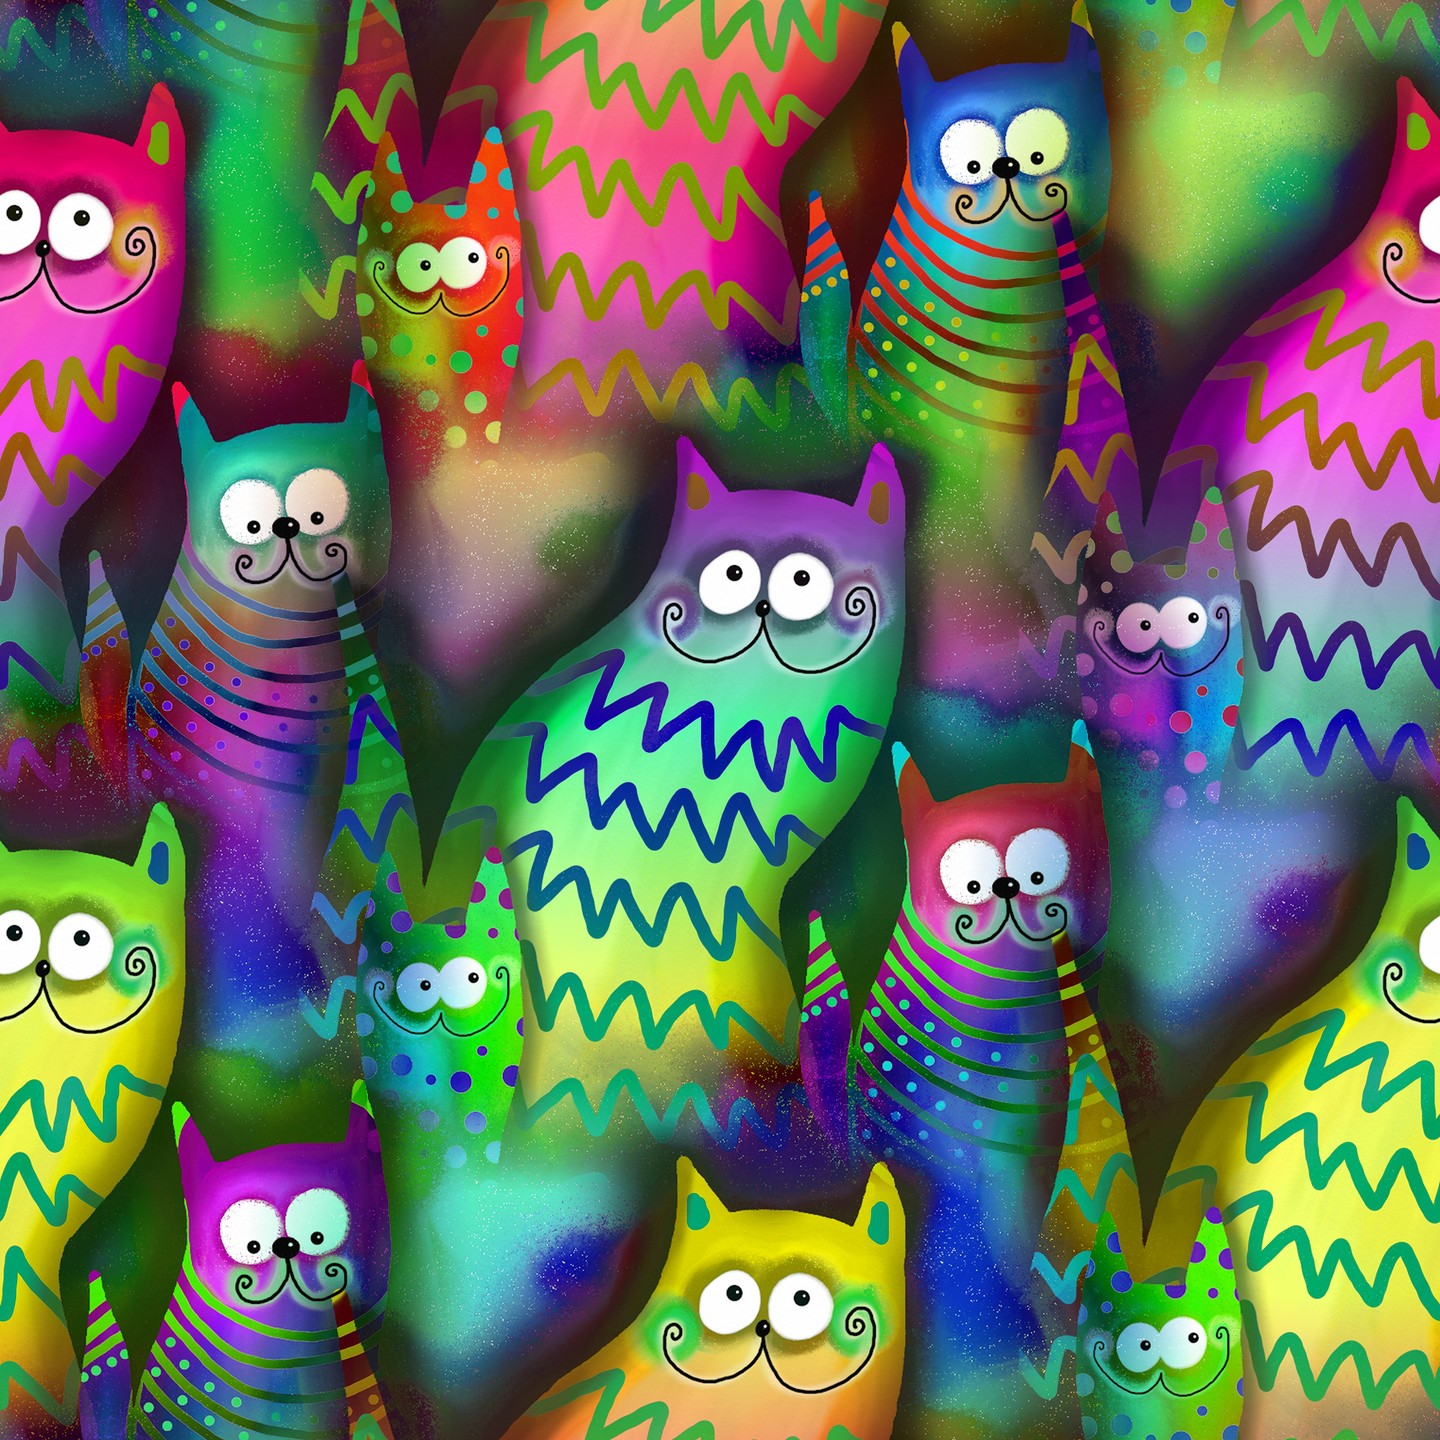 Illustratie met een groep katten. Ze hebben kleuren uit de regenboog en kijken met hun krullhaar vrolijk alle kanten op.